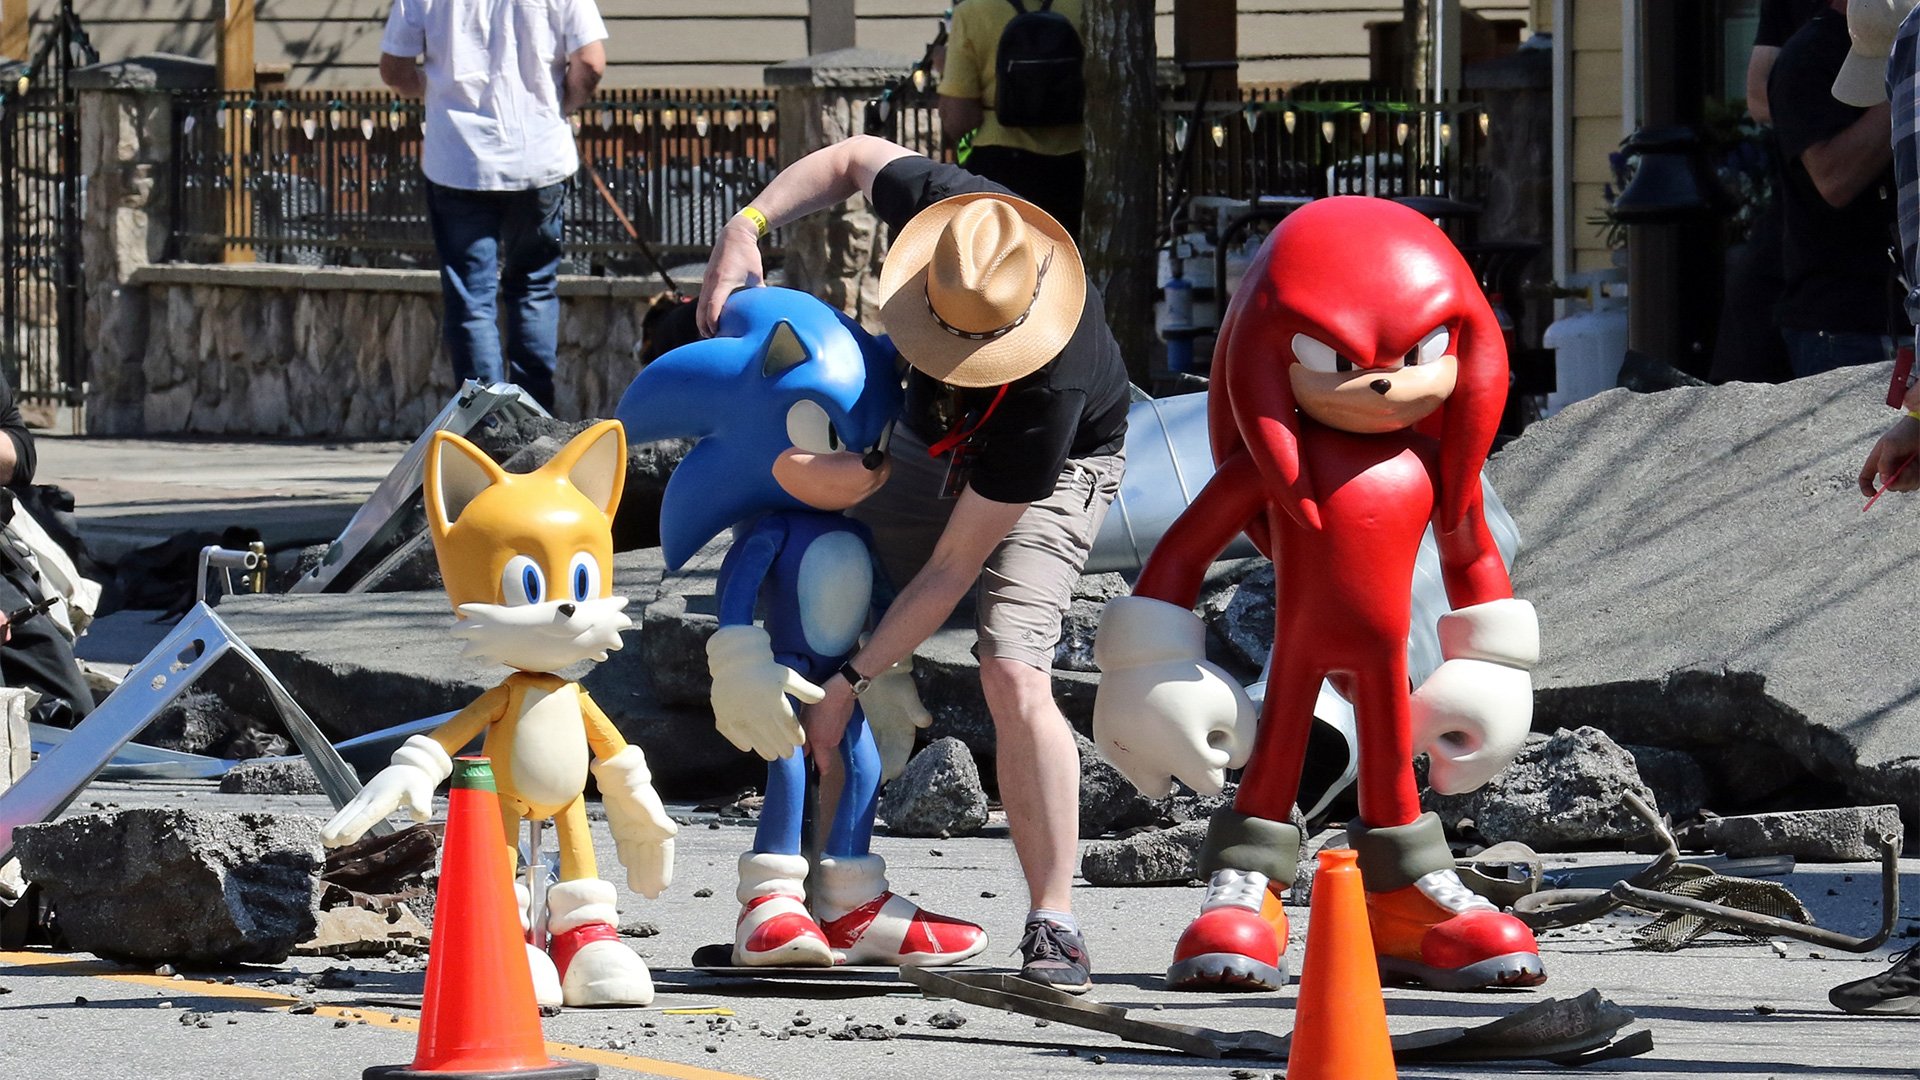 Sonic 2: O Filme, Teaser